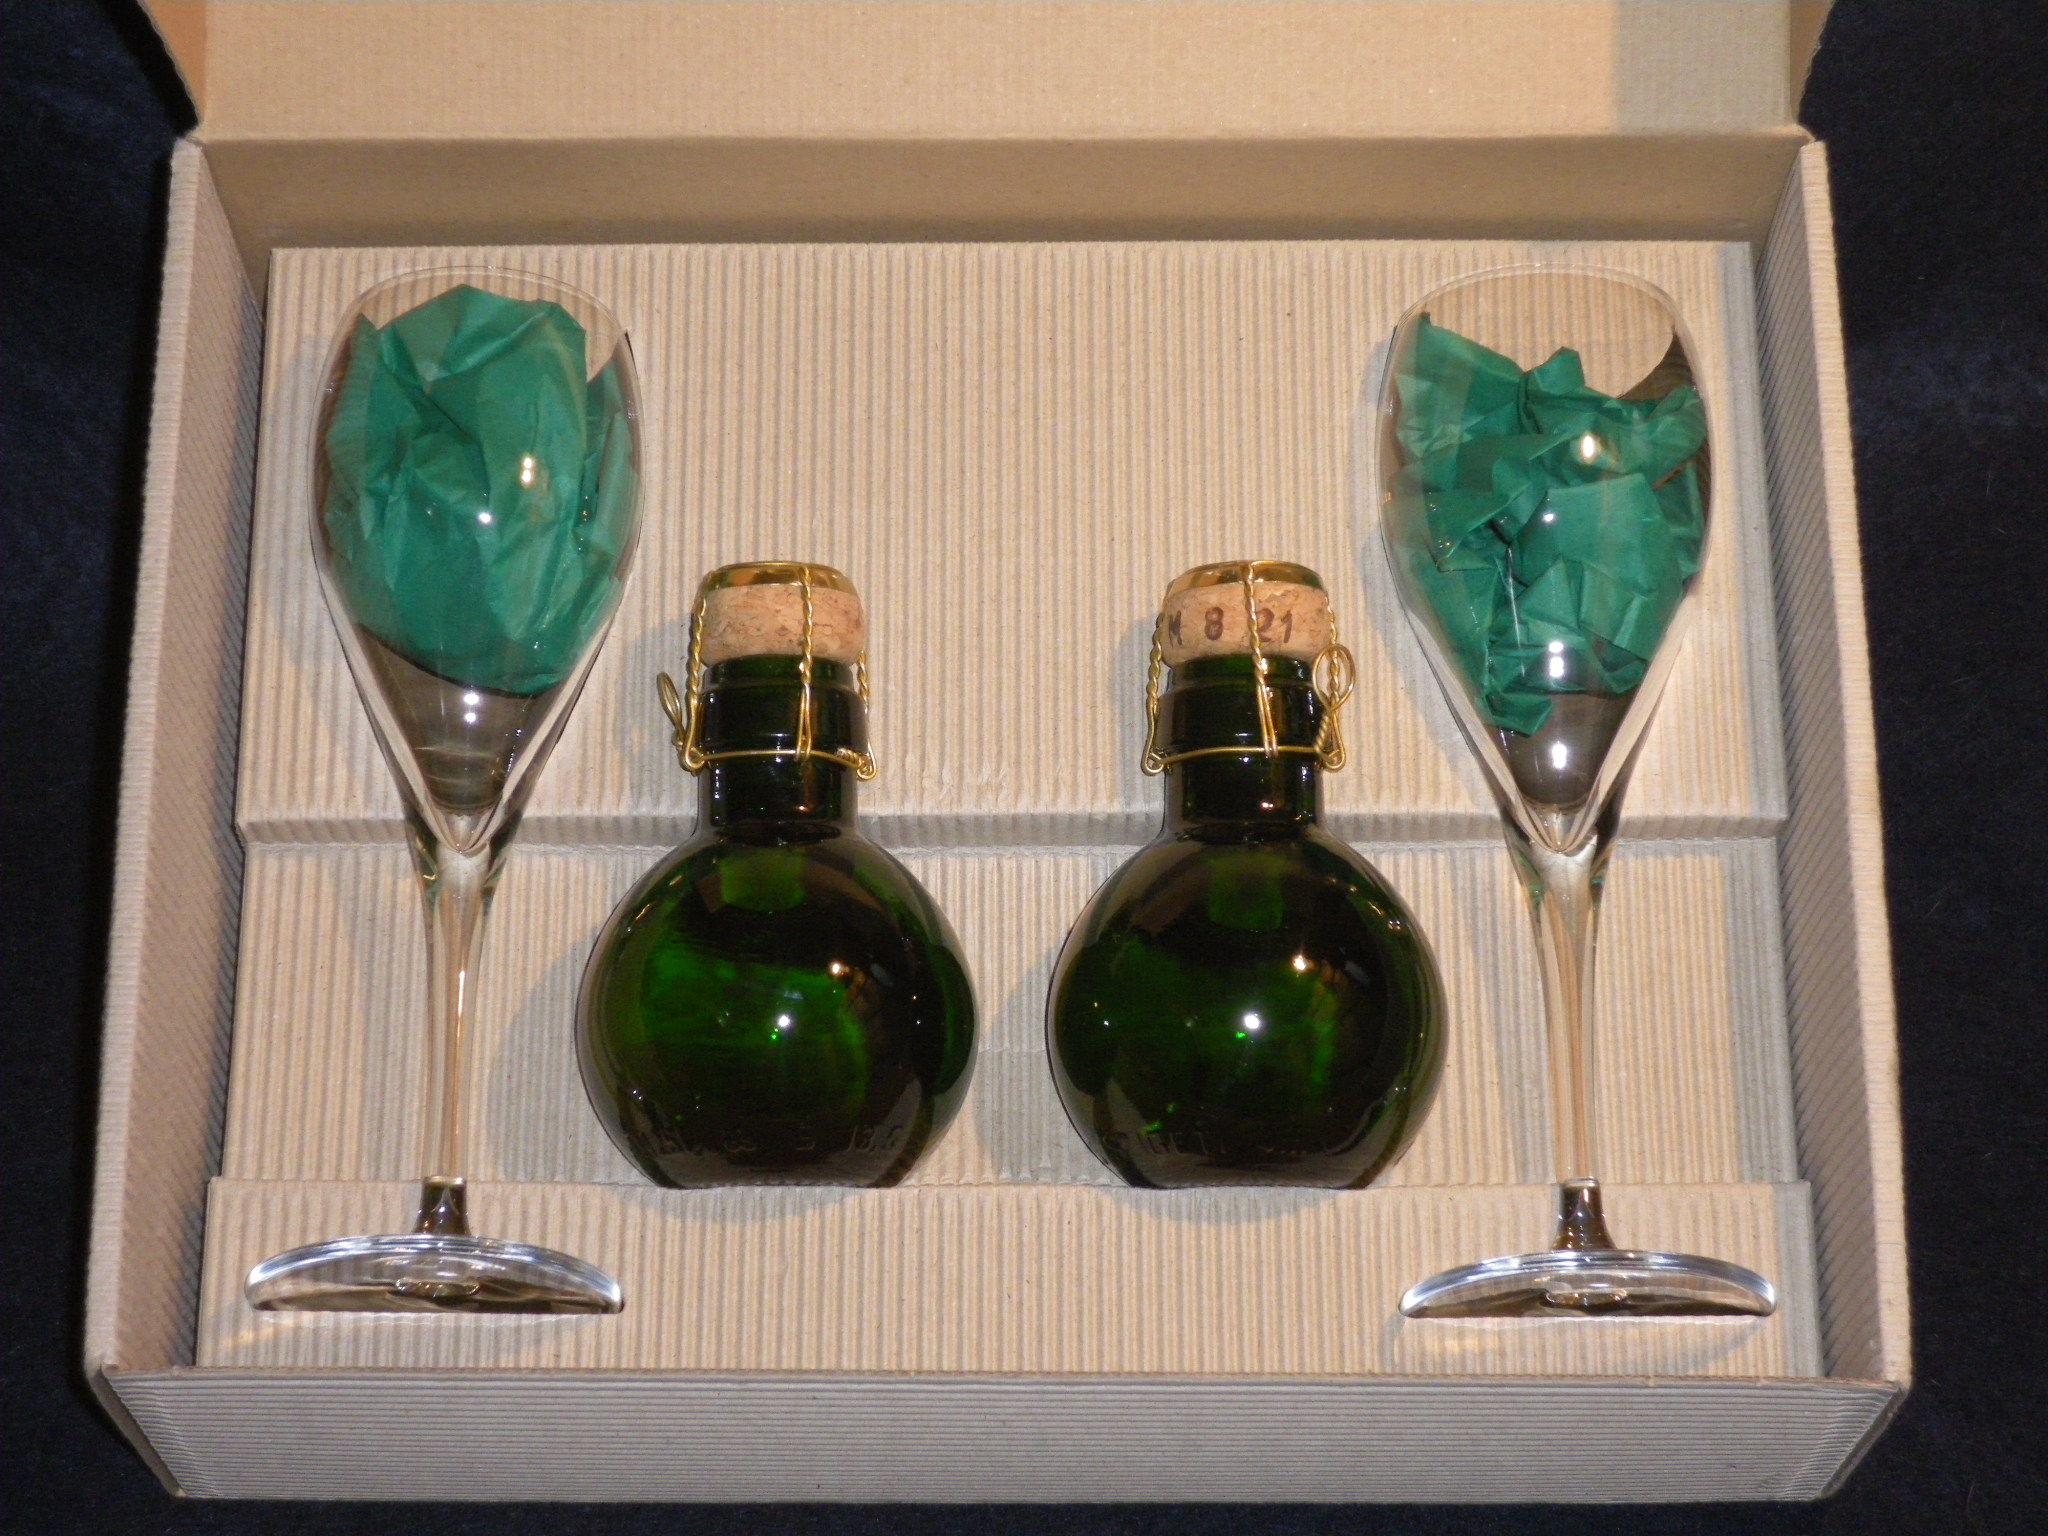 Sektset bestehend aus 2 kl. Sektflaschen u. 2 Gläser